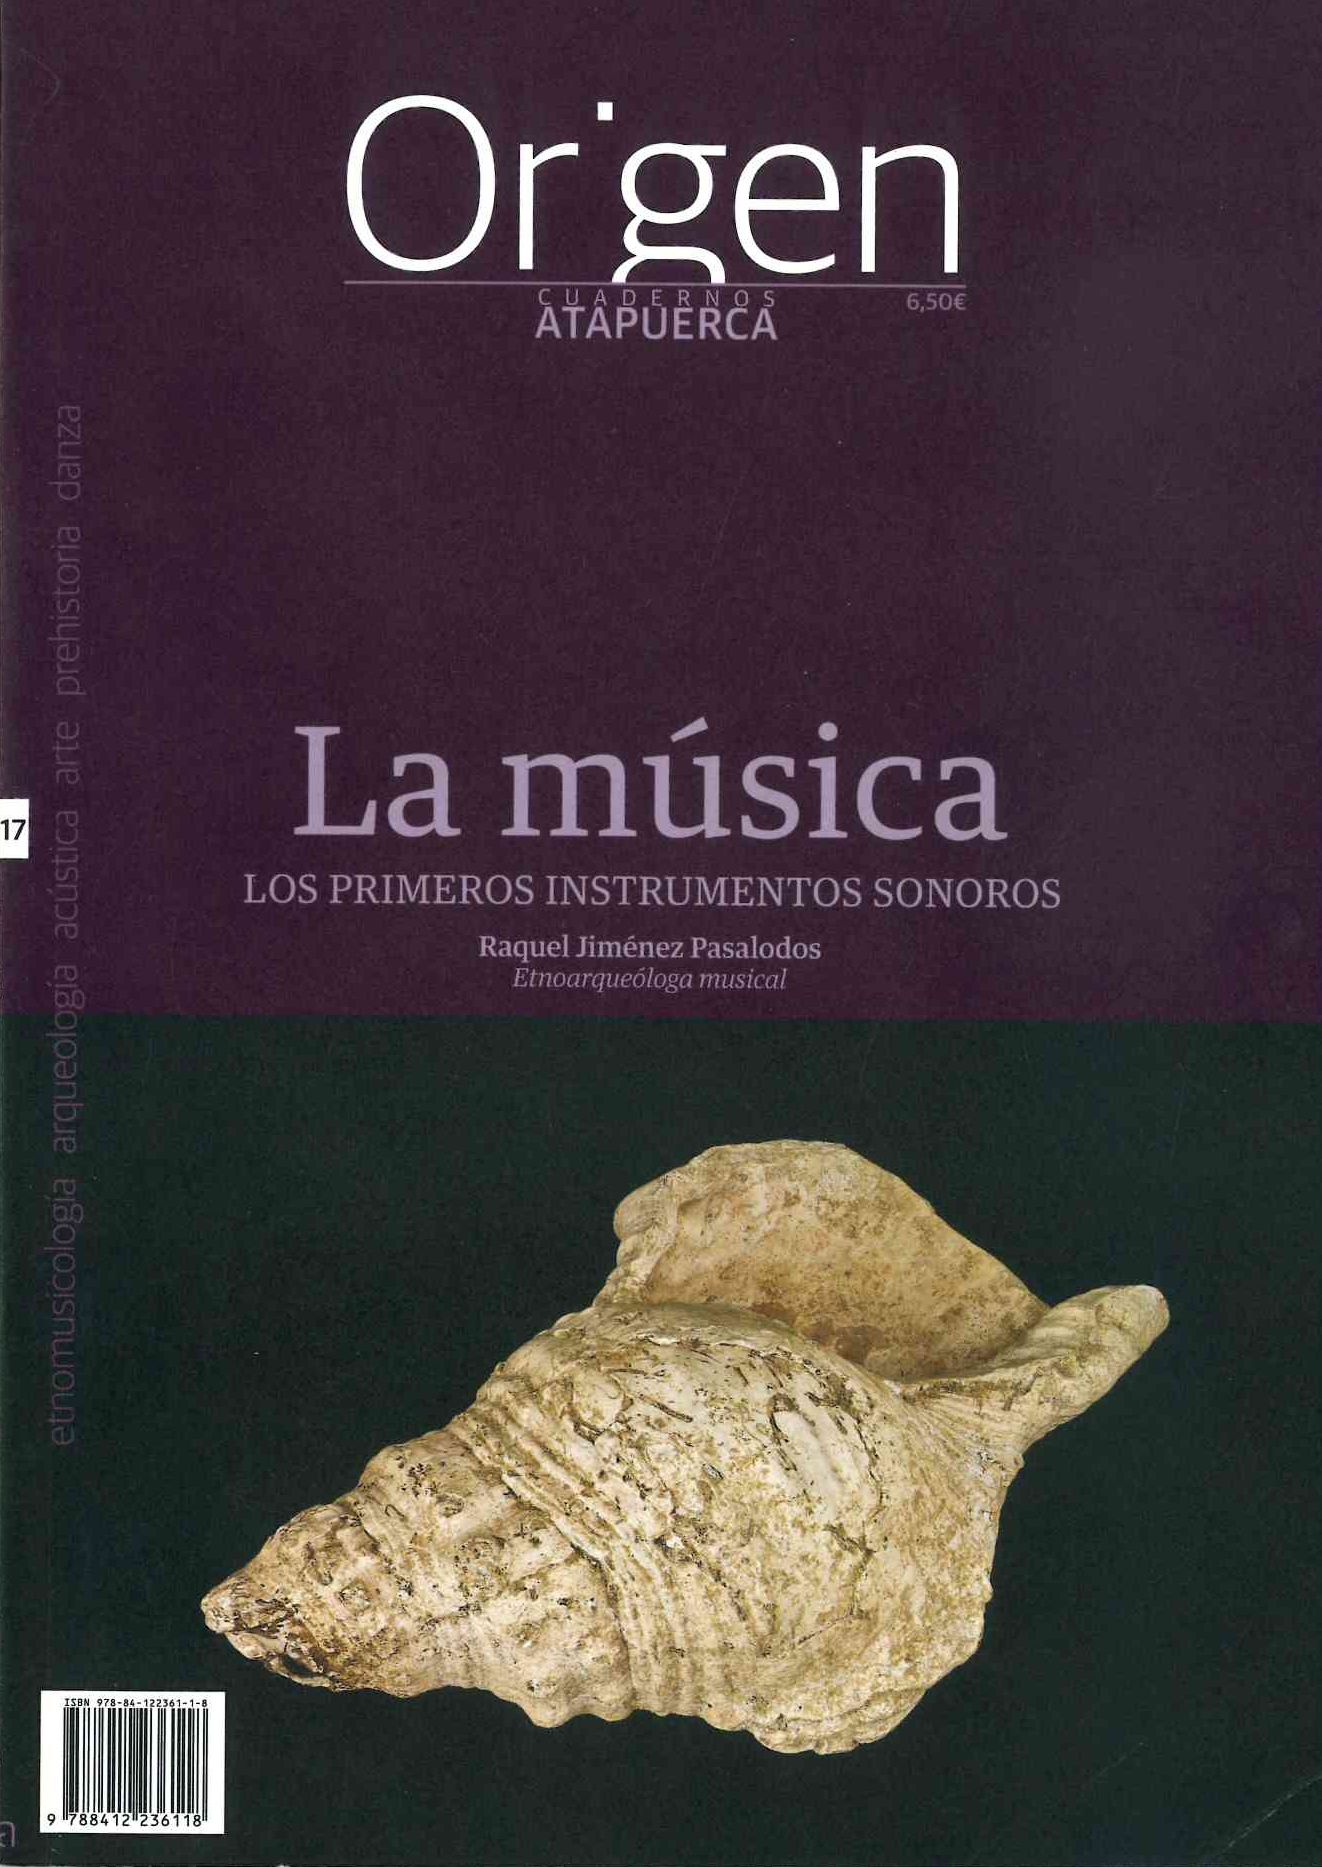 Imagen de portada del libro La música